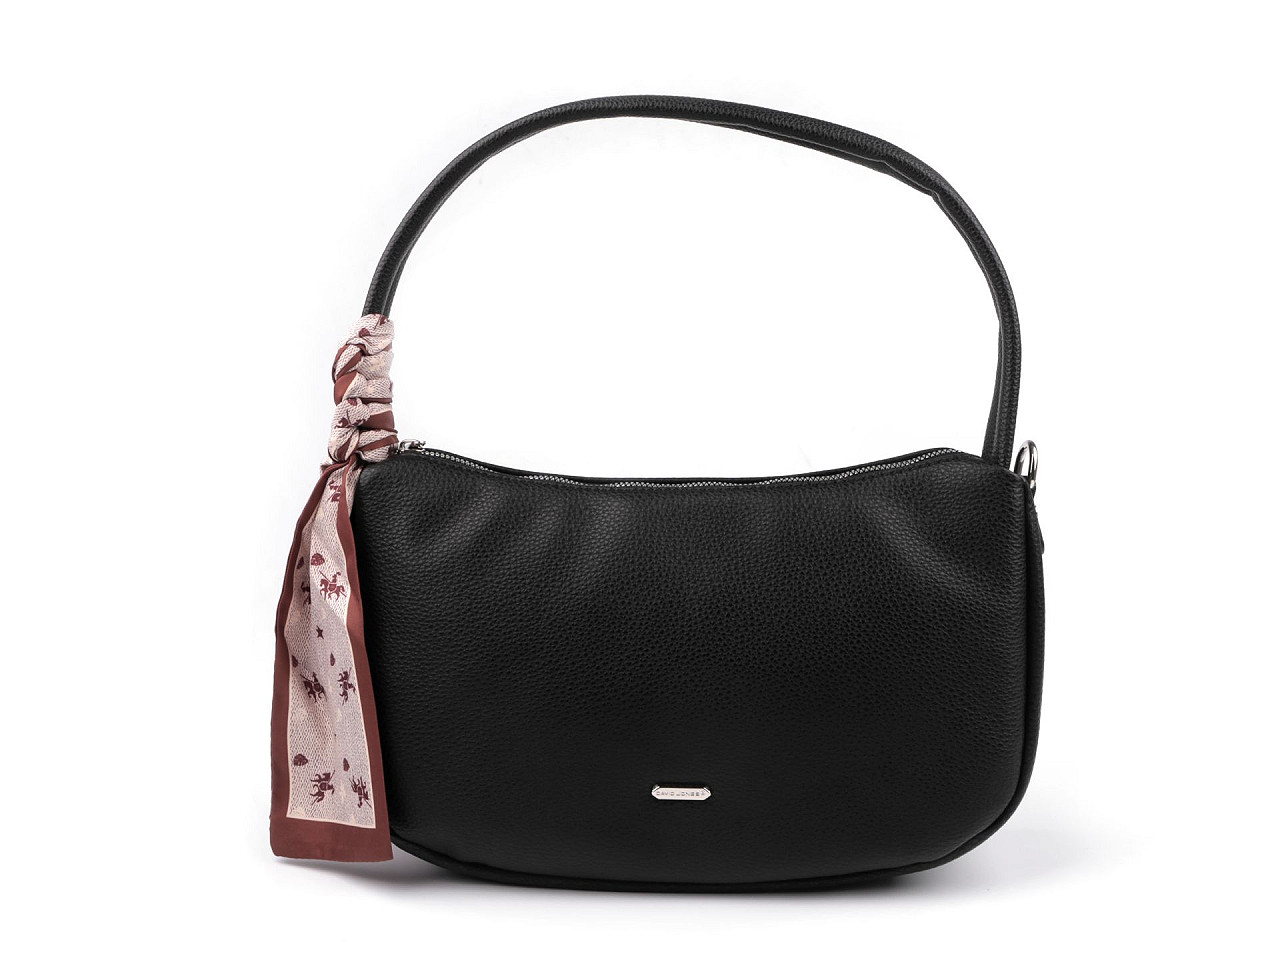 Damenhandtasche 32x19 cm, schwarz, 1 Stk.